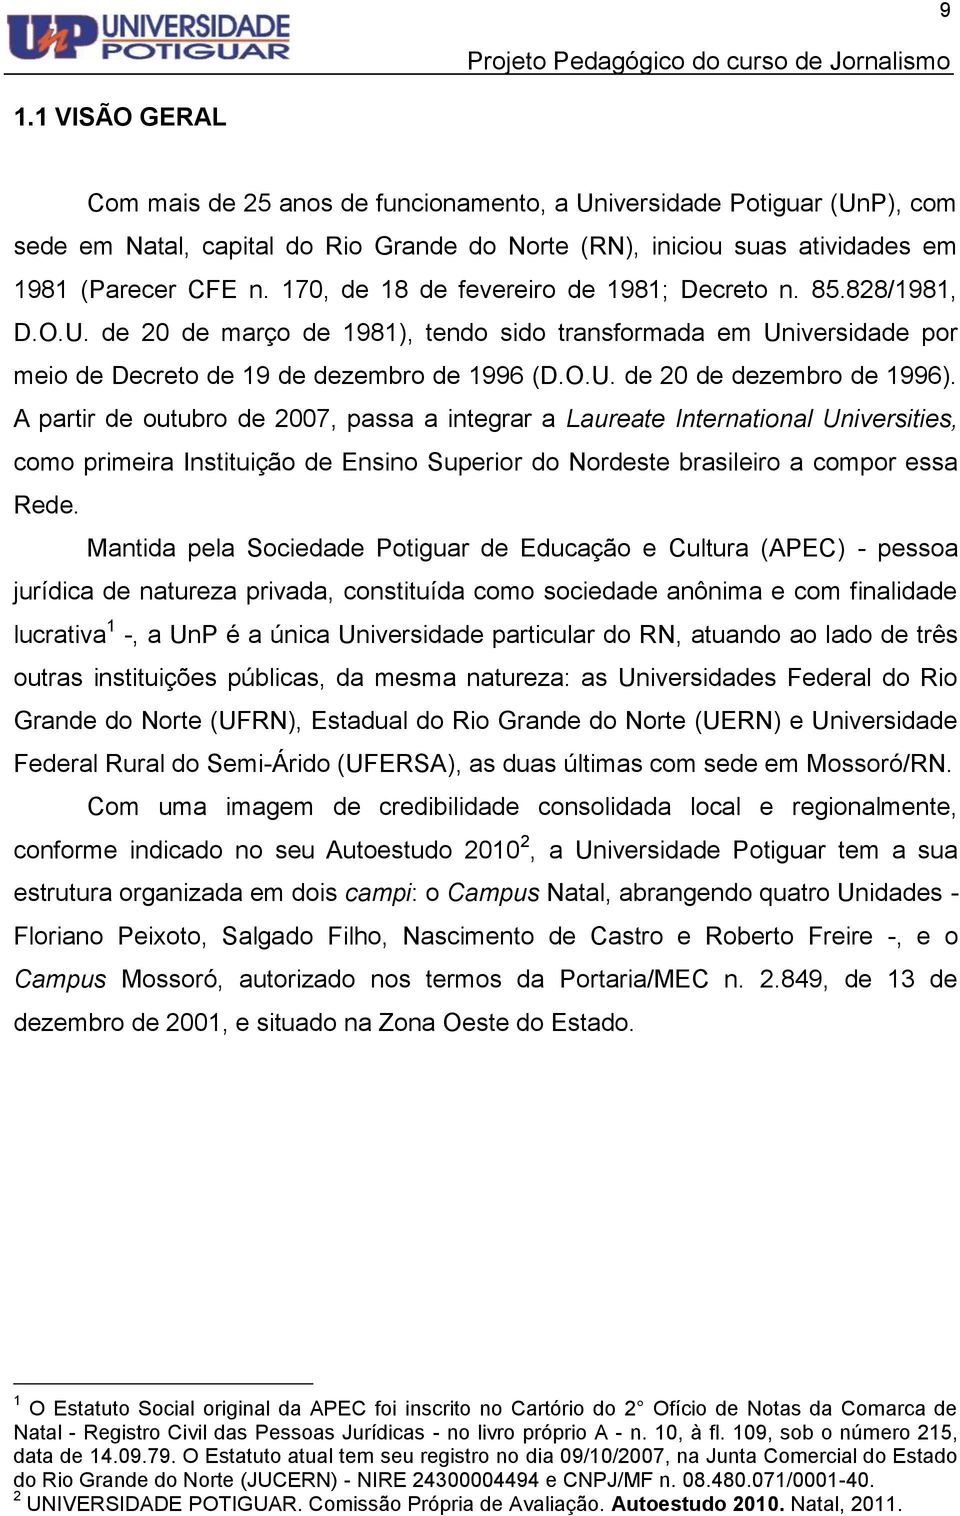 A partir de outubro de 2007, passa a integrar a Laureate International Universities, como primeira Instituição de Ensino Superior do Nordeste brasileiro a compor essa Rede.